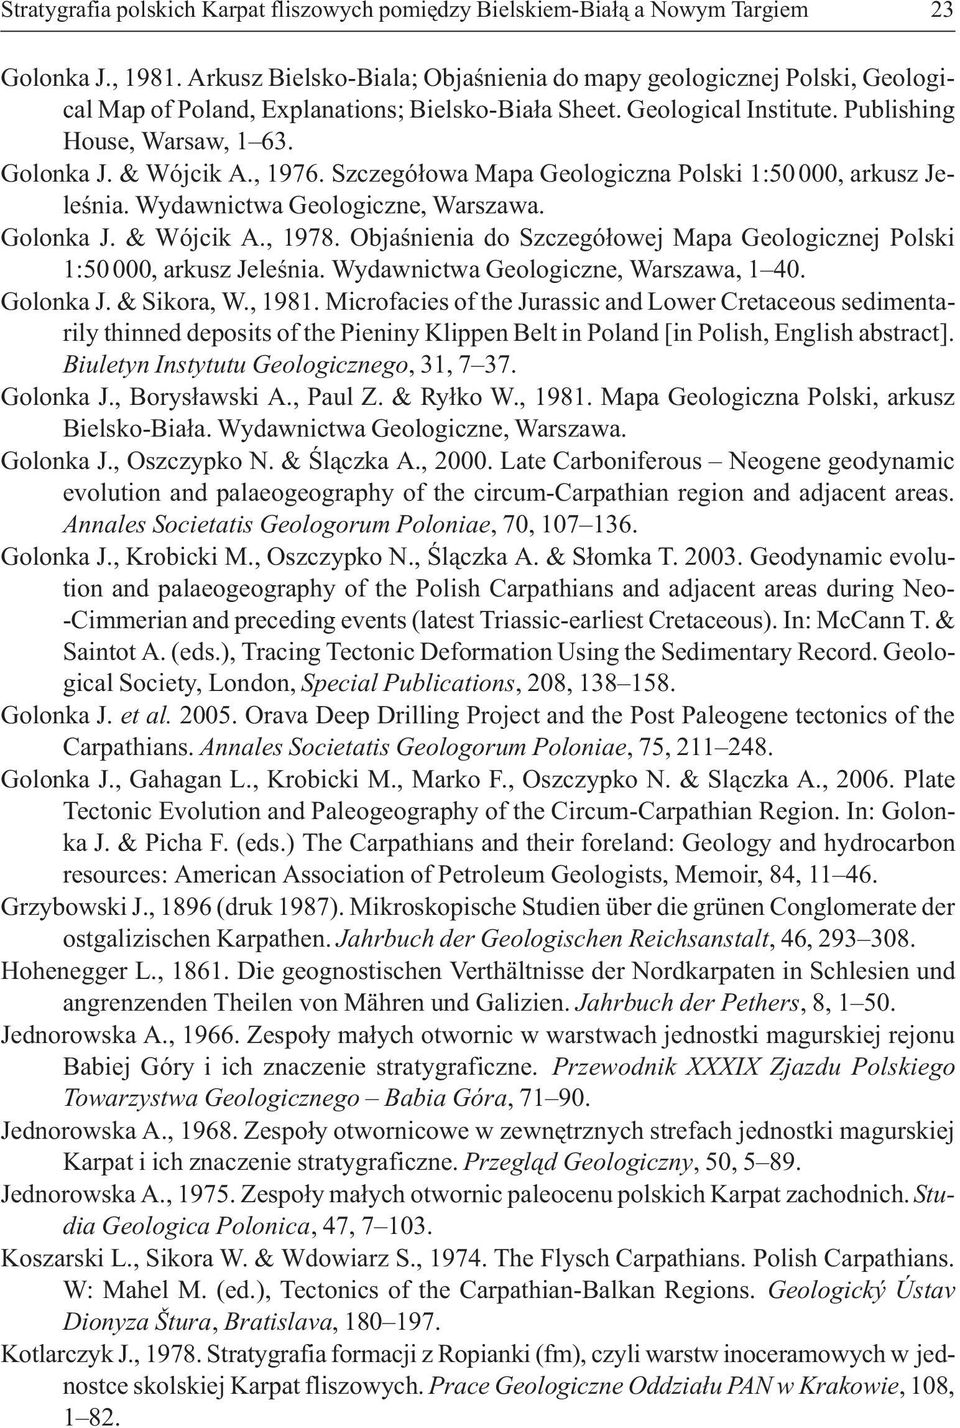 , 1976. Szczegó³owa Mapa Geologiczna Polski 1:50000, arkusz Jeleœnia. Wydawnictwa Geologiczne, Warszawa. Golonka J. & Wójcik A., 1978.